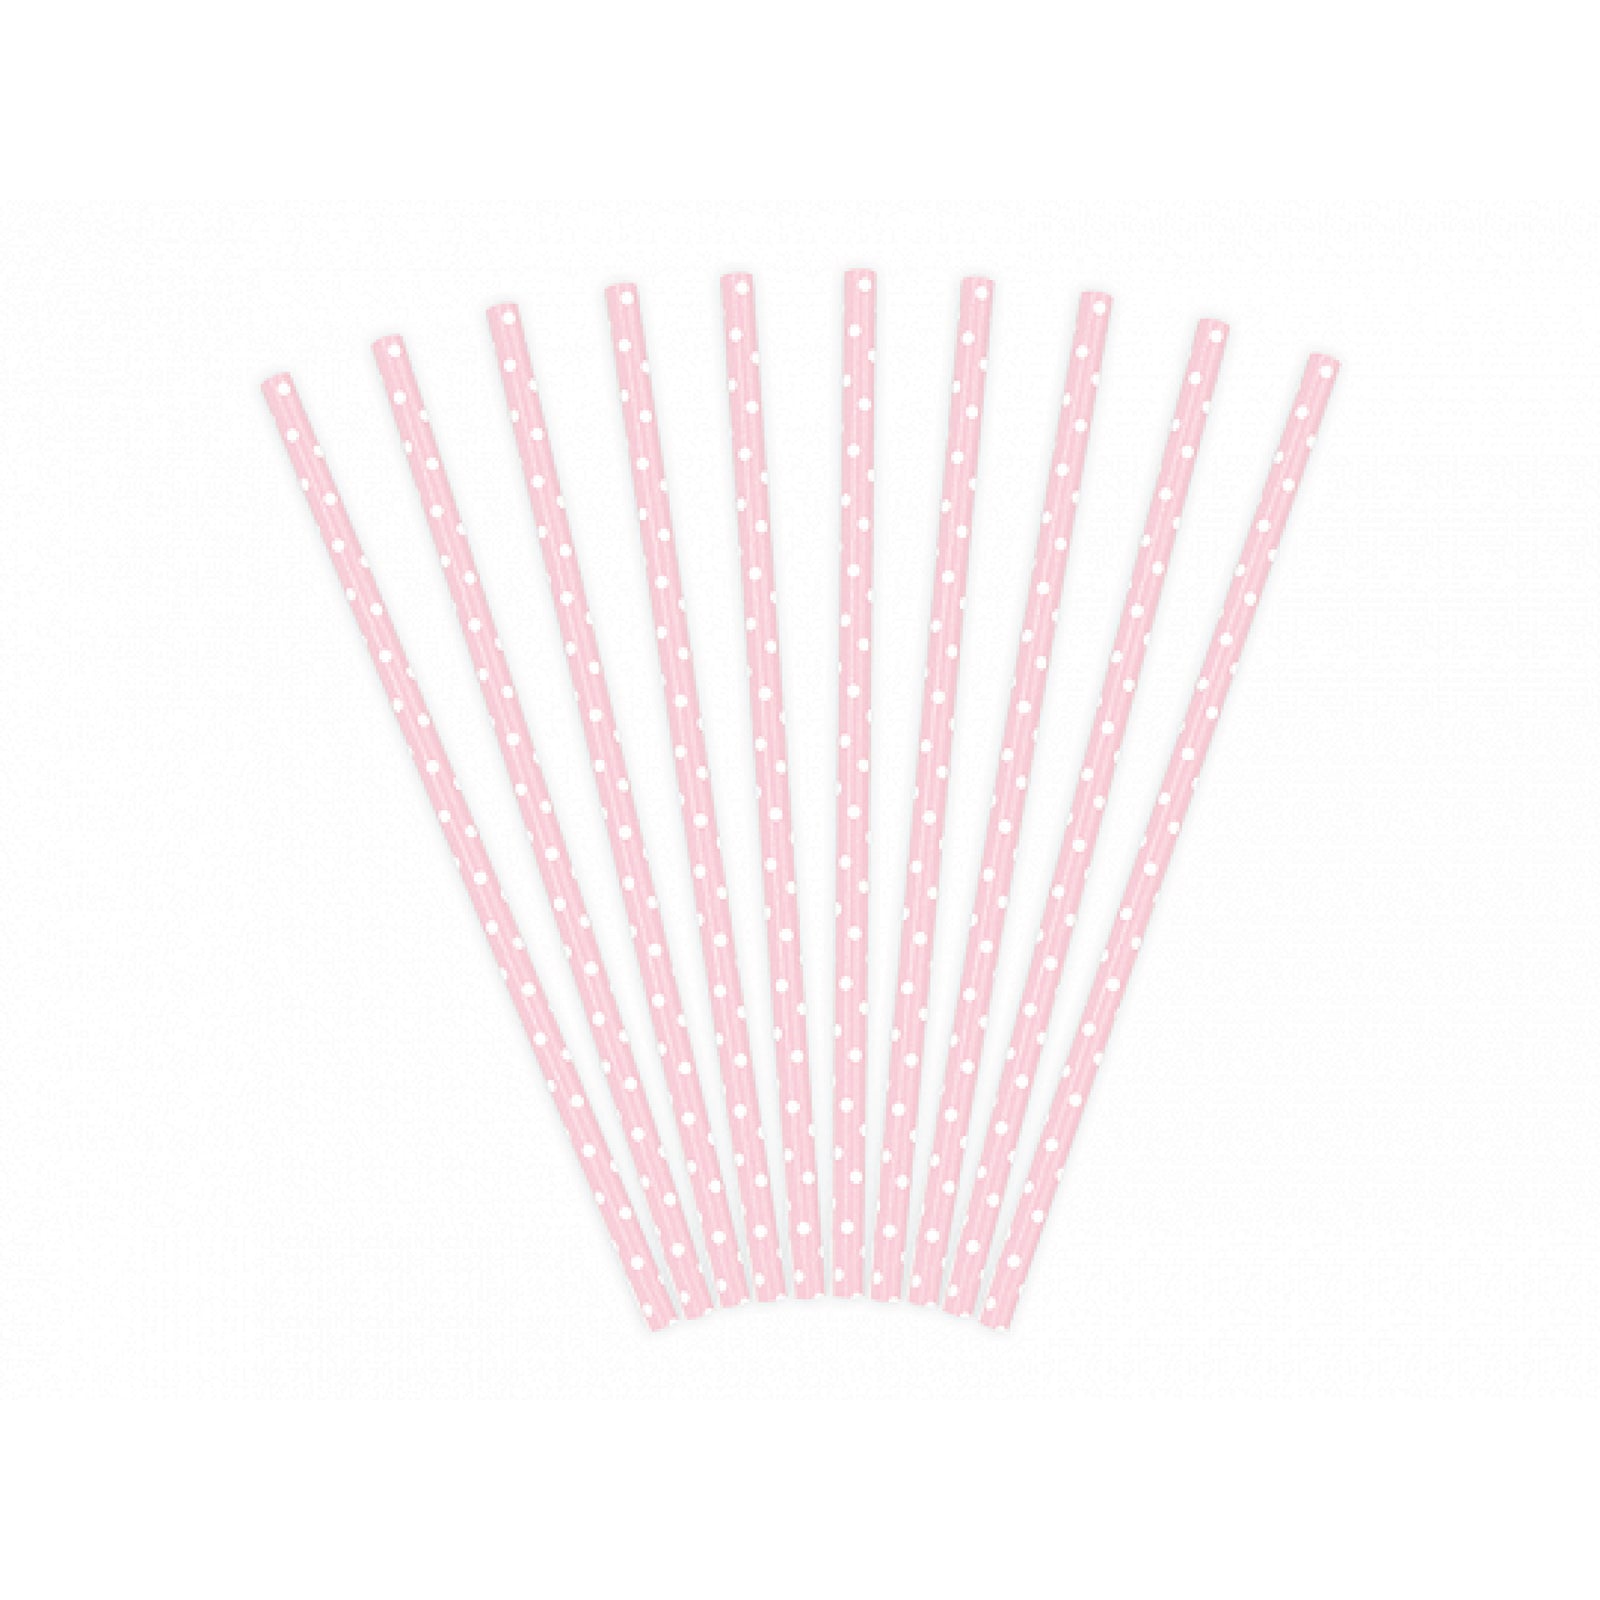 https://cdn.shopify.com/s/files/1/1449/4112/products/light-pink-polka-dot-paper-straws_1600x.jpg?v=1631126338